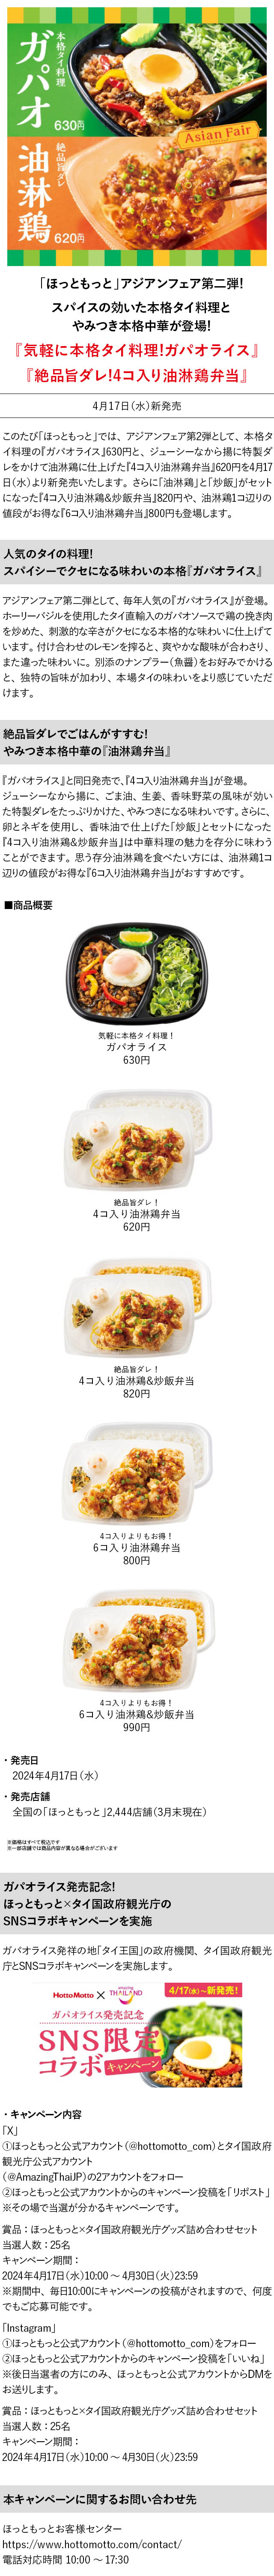 【4月17日(水)～】アジアンフェア第二弾『ガパオライス』『4コ入り油淋鶏弁当』発売のお知らせ